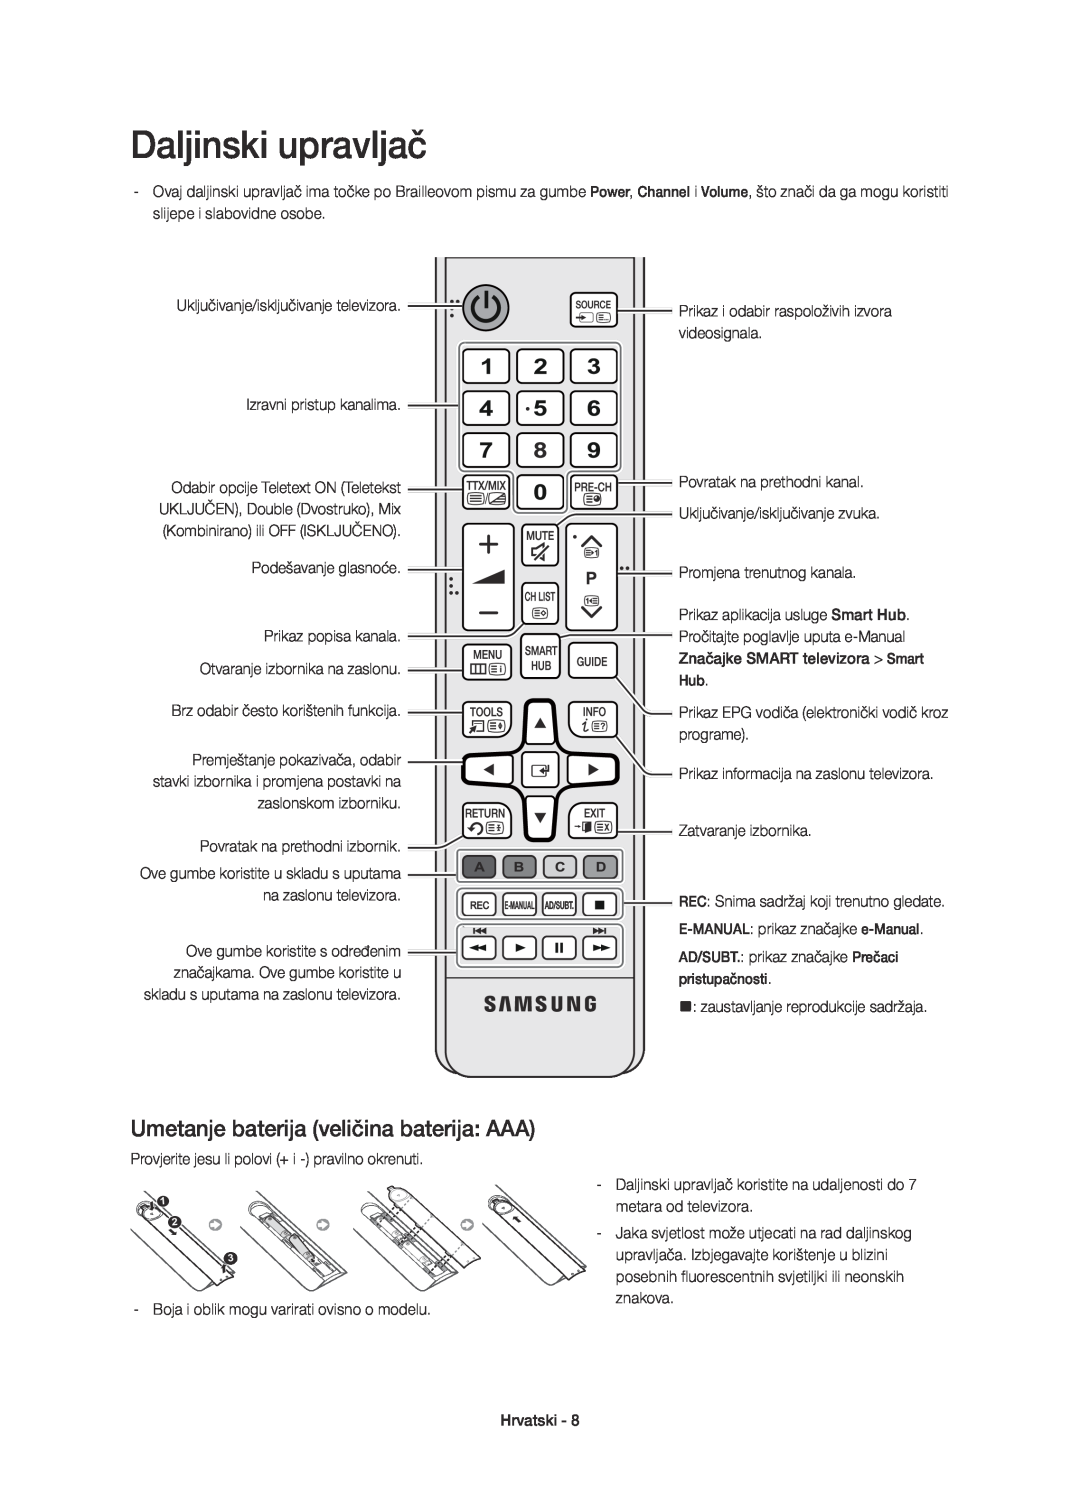 Samsung UE48H6670SLXXH manual Umetanje baterija veličina baterija AAA, E-MANUAL prikaz značajke e-Manual, pristupačnosti 